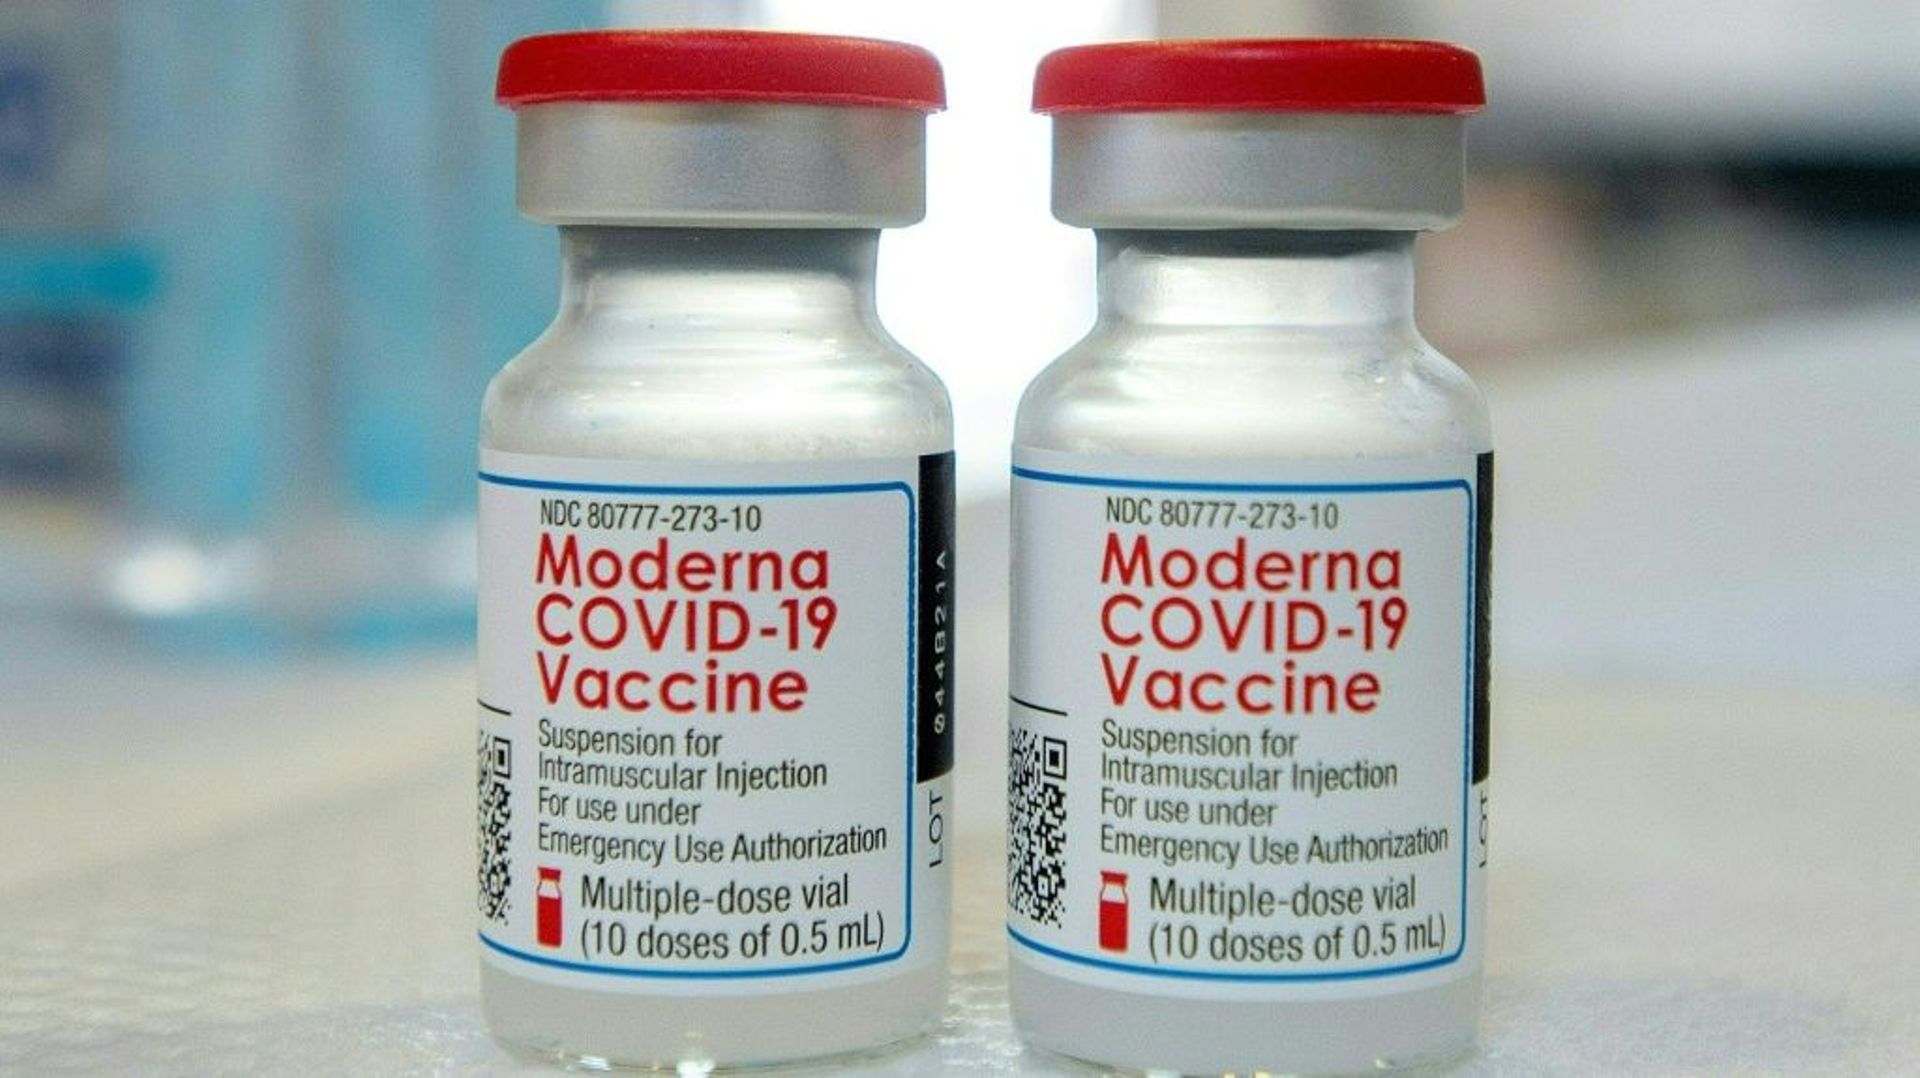 Le vaccin de Moderna supérieur à celui de Pfizer contre les Covid graves, selon une étude